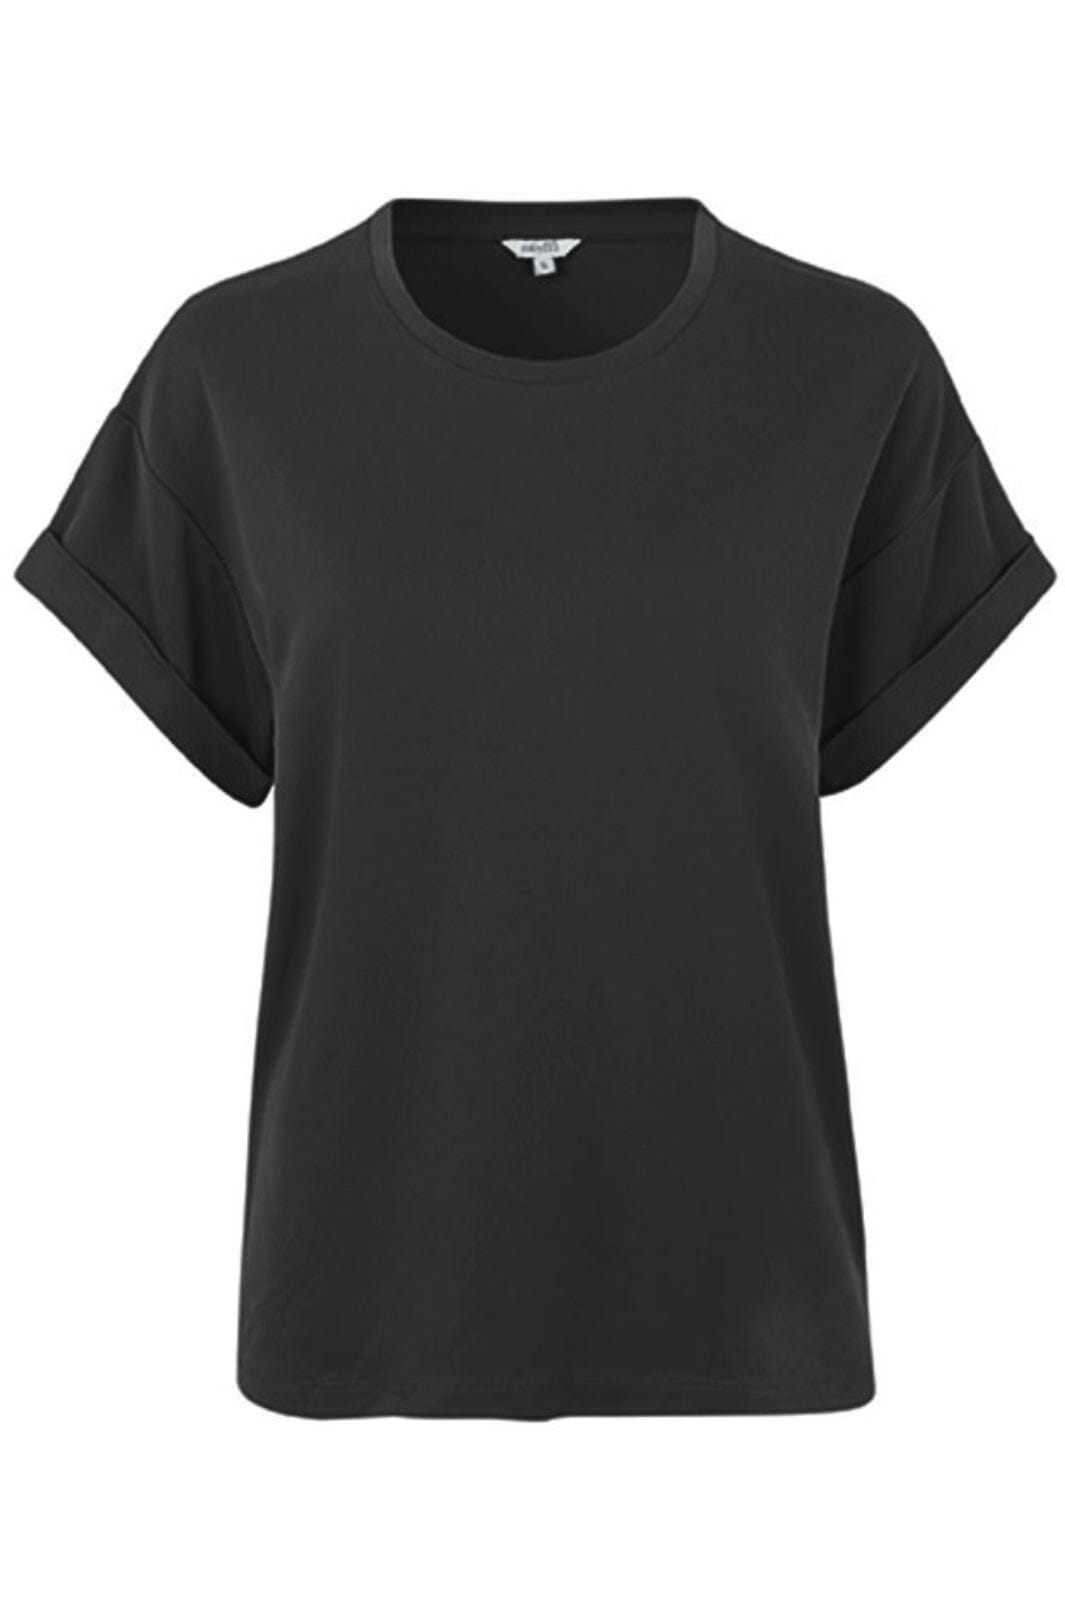 MbyM - Amana - Black T-shirts 